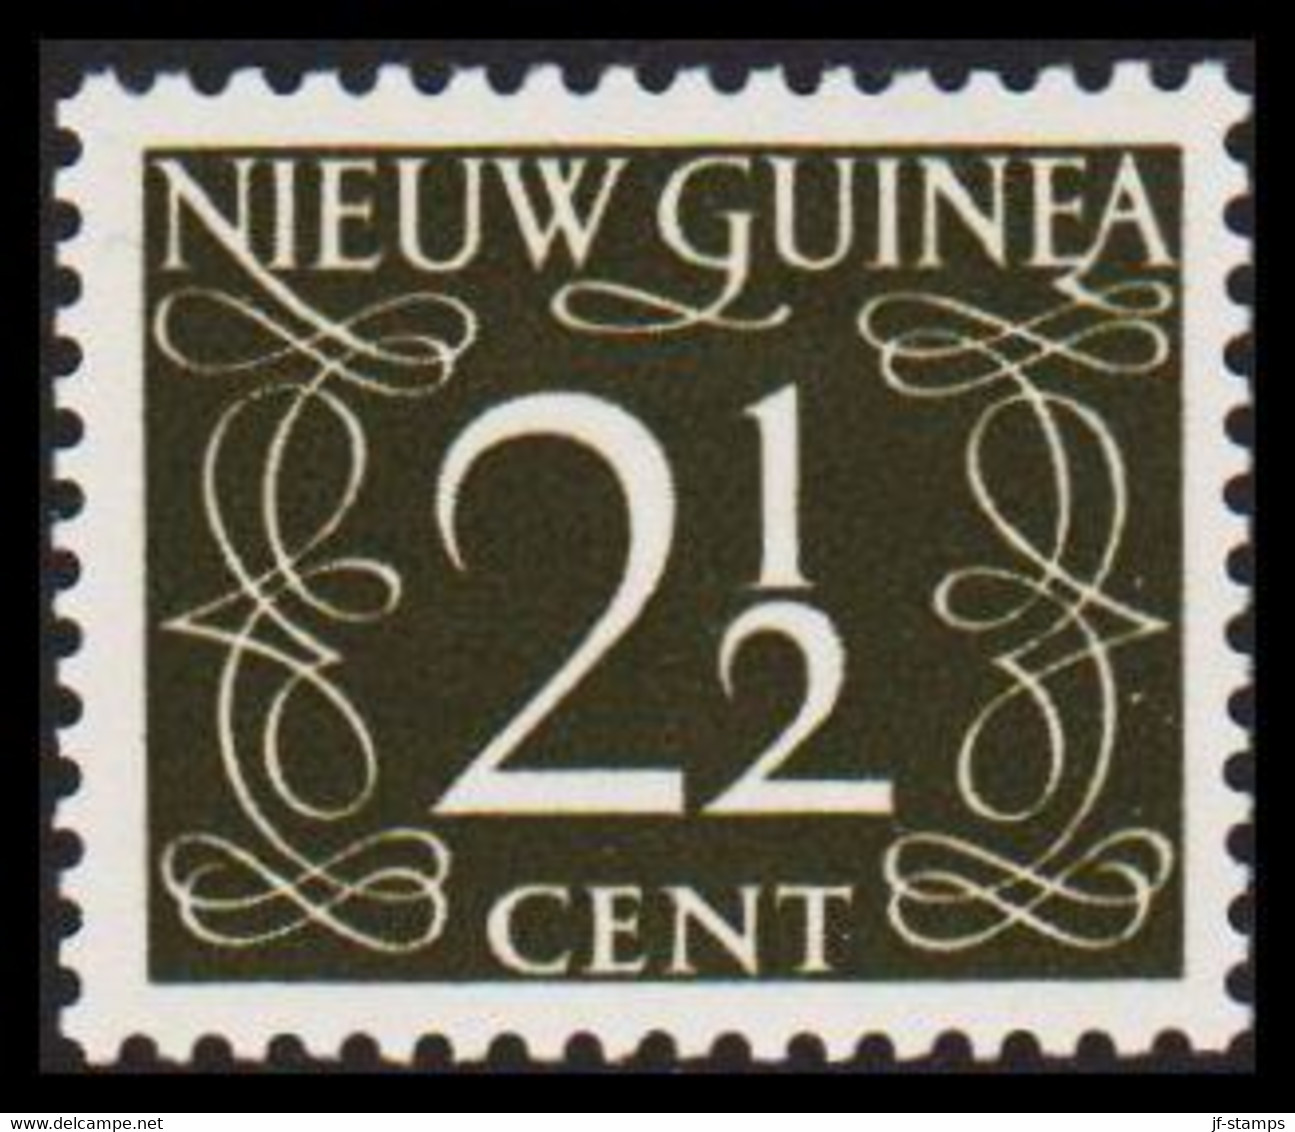 1950. NIEUW GUINEA. Nummerals- Type 2½ CENT Hinged.  - JF529320 - Nouvelle Guinée Néerlandaise